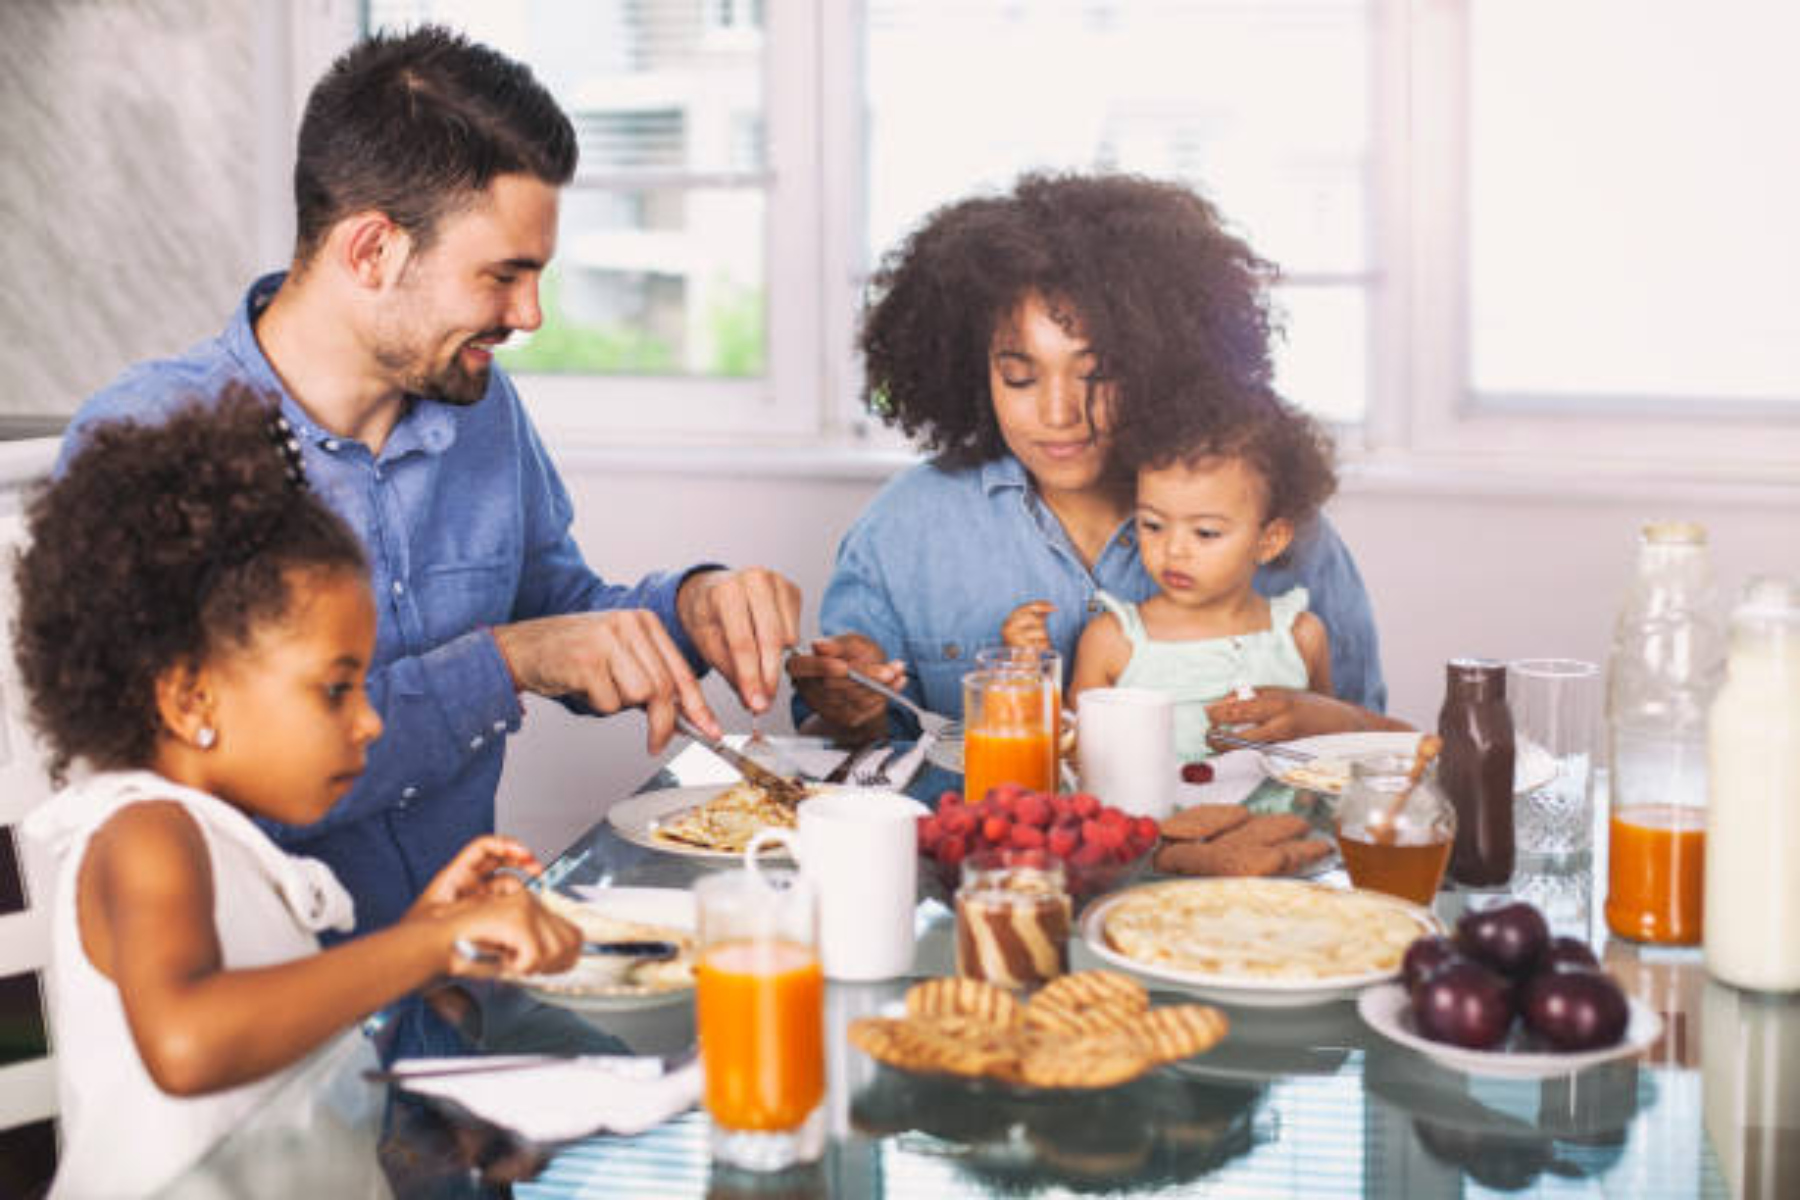 Πρωινό: Απολαύστε ένα υπερπολυτελές σπιτικό πρωινό με την οικογένειά σας!